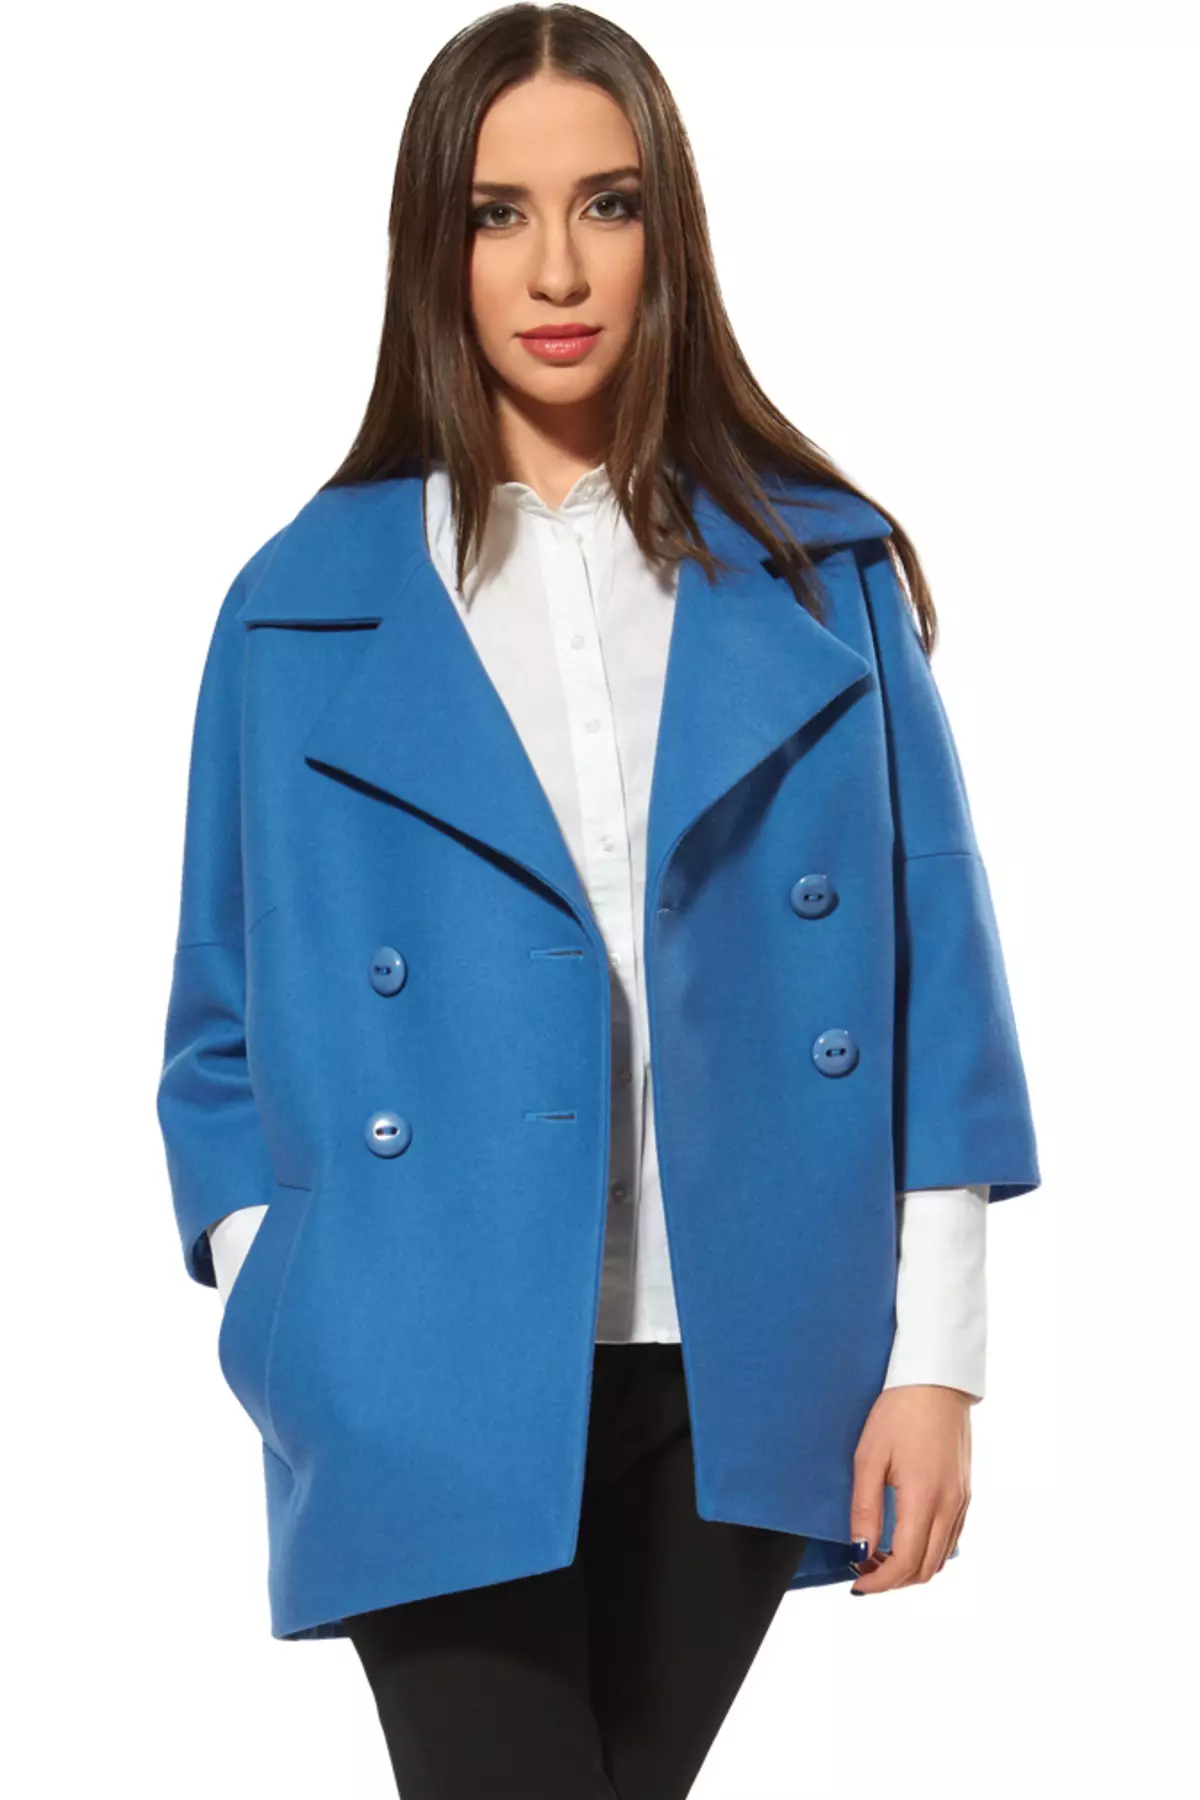 Coat-kabát (36 fotók): A tavaszi szezon divatos valya modelljei 2021, Női kabát kabát formájában 478_26